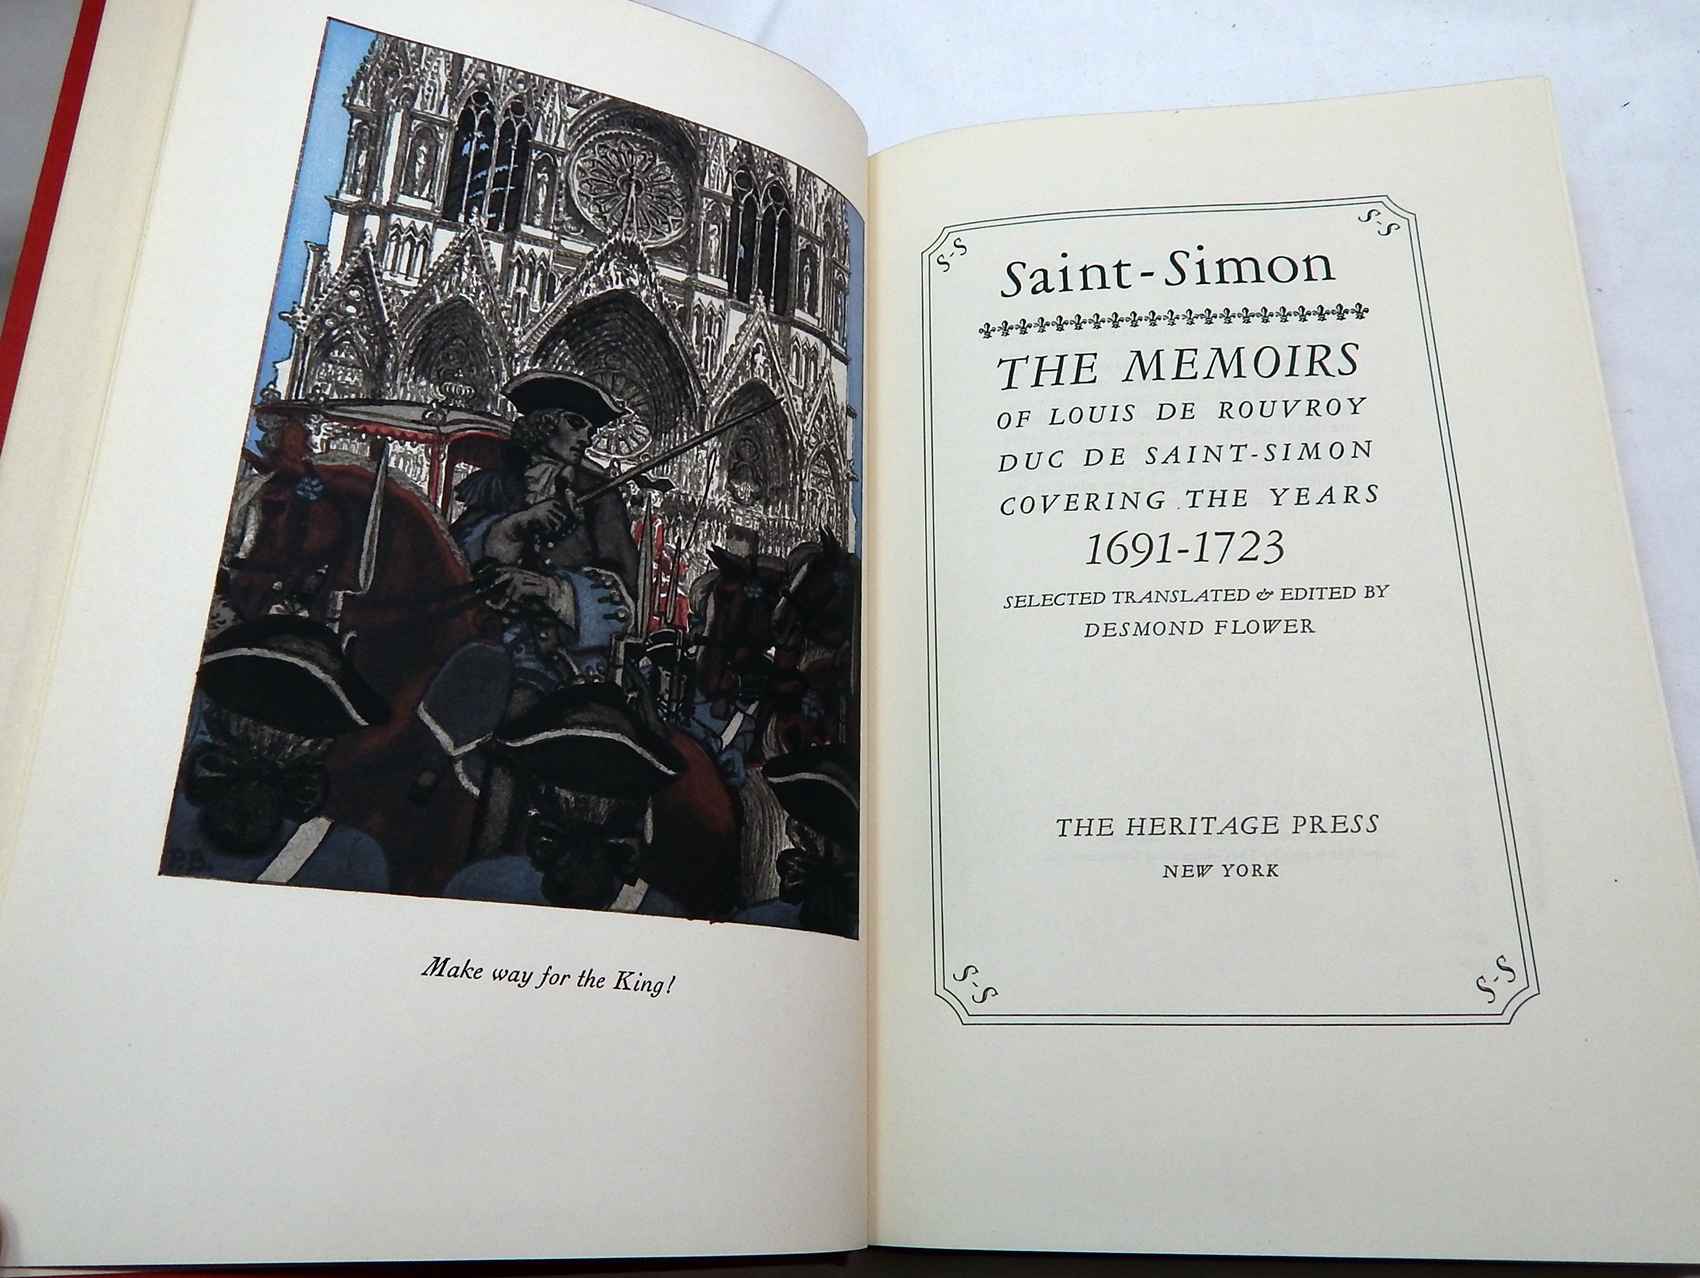 SAINT-SIMON - The Memoirs of Louis de Rouvroy, Duc de Saint-Simon Covering the Years 1691-1723